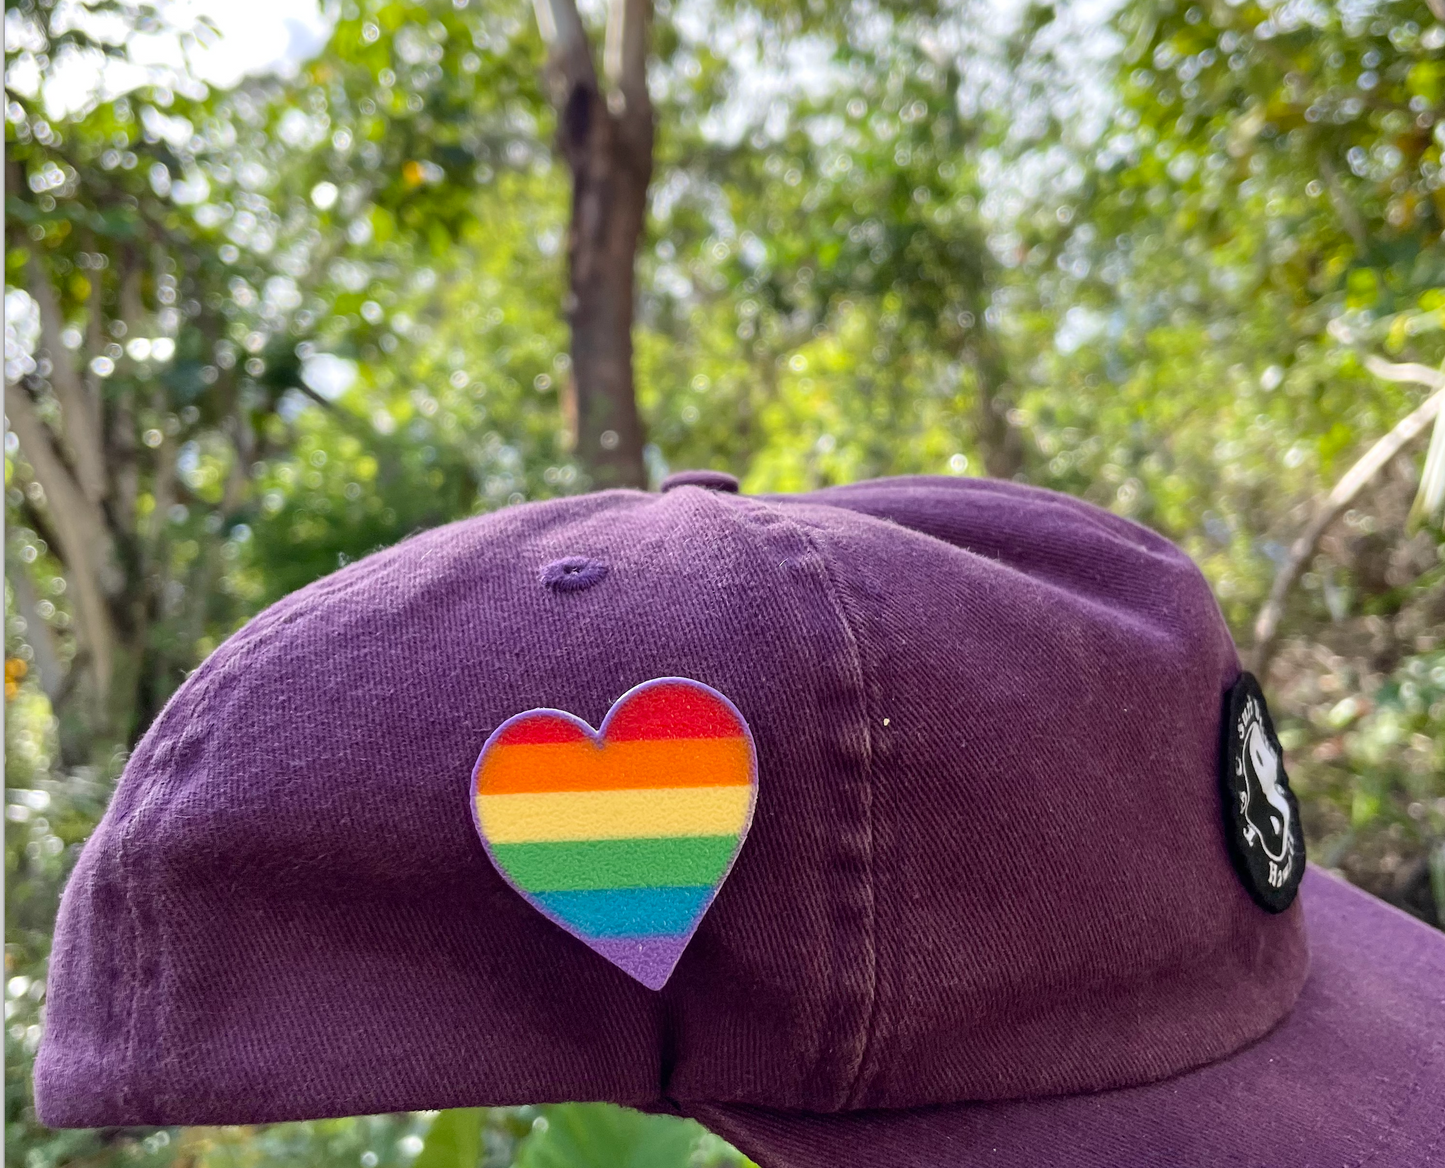 Rainbow on rainbow pride heart pin